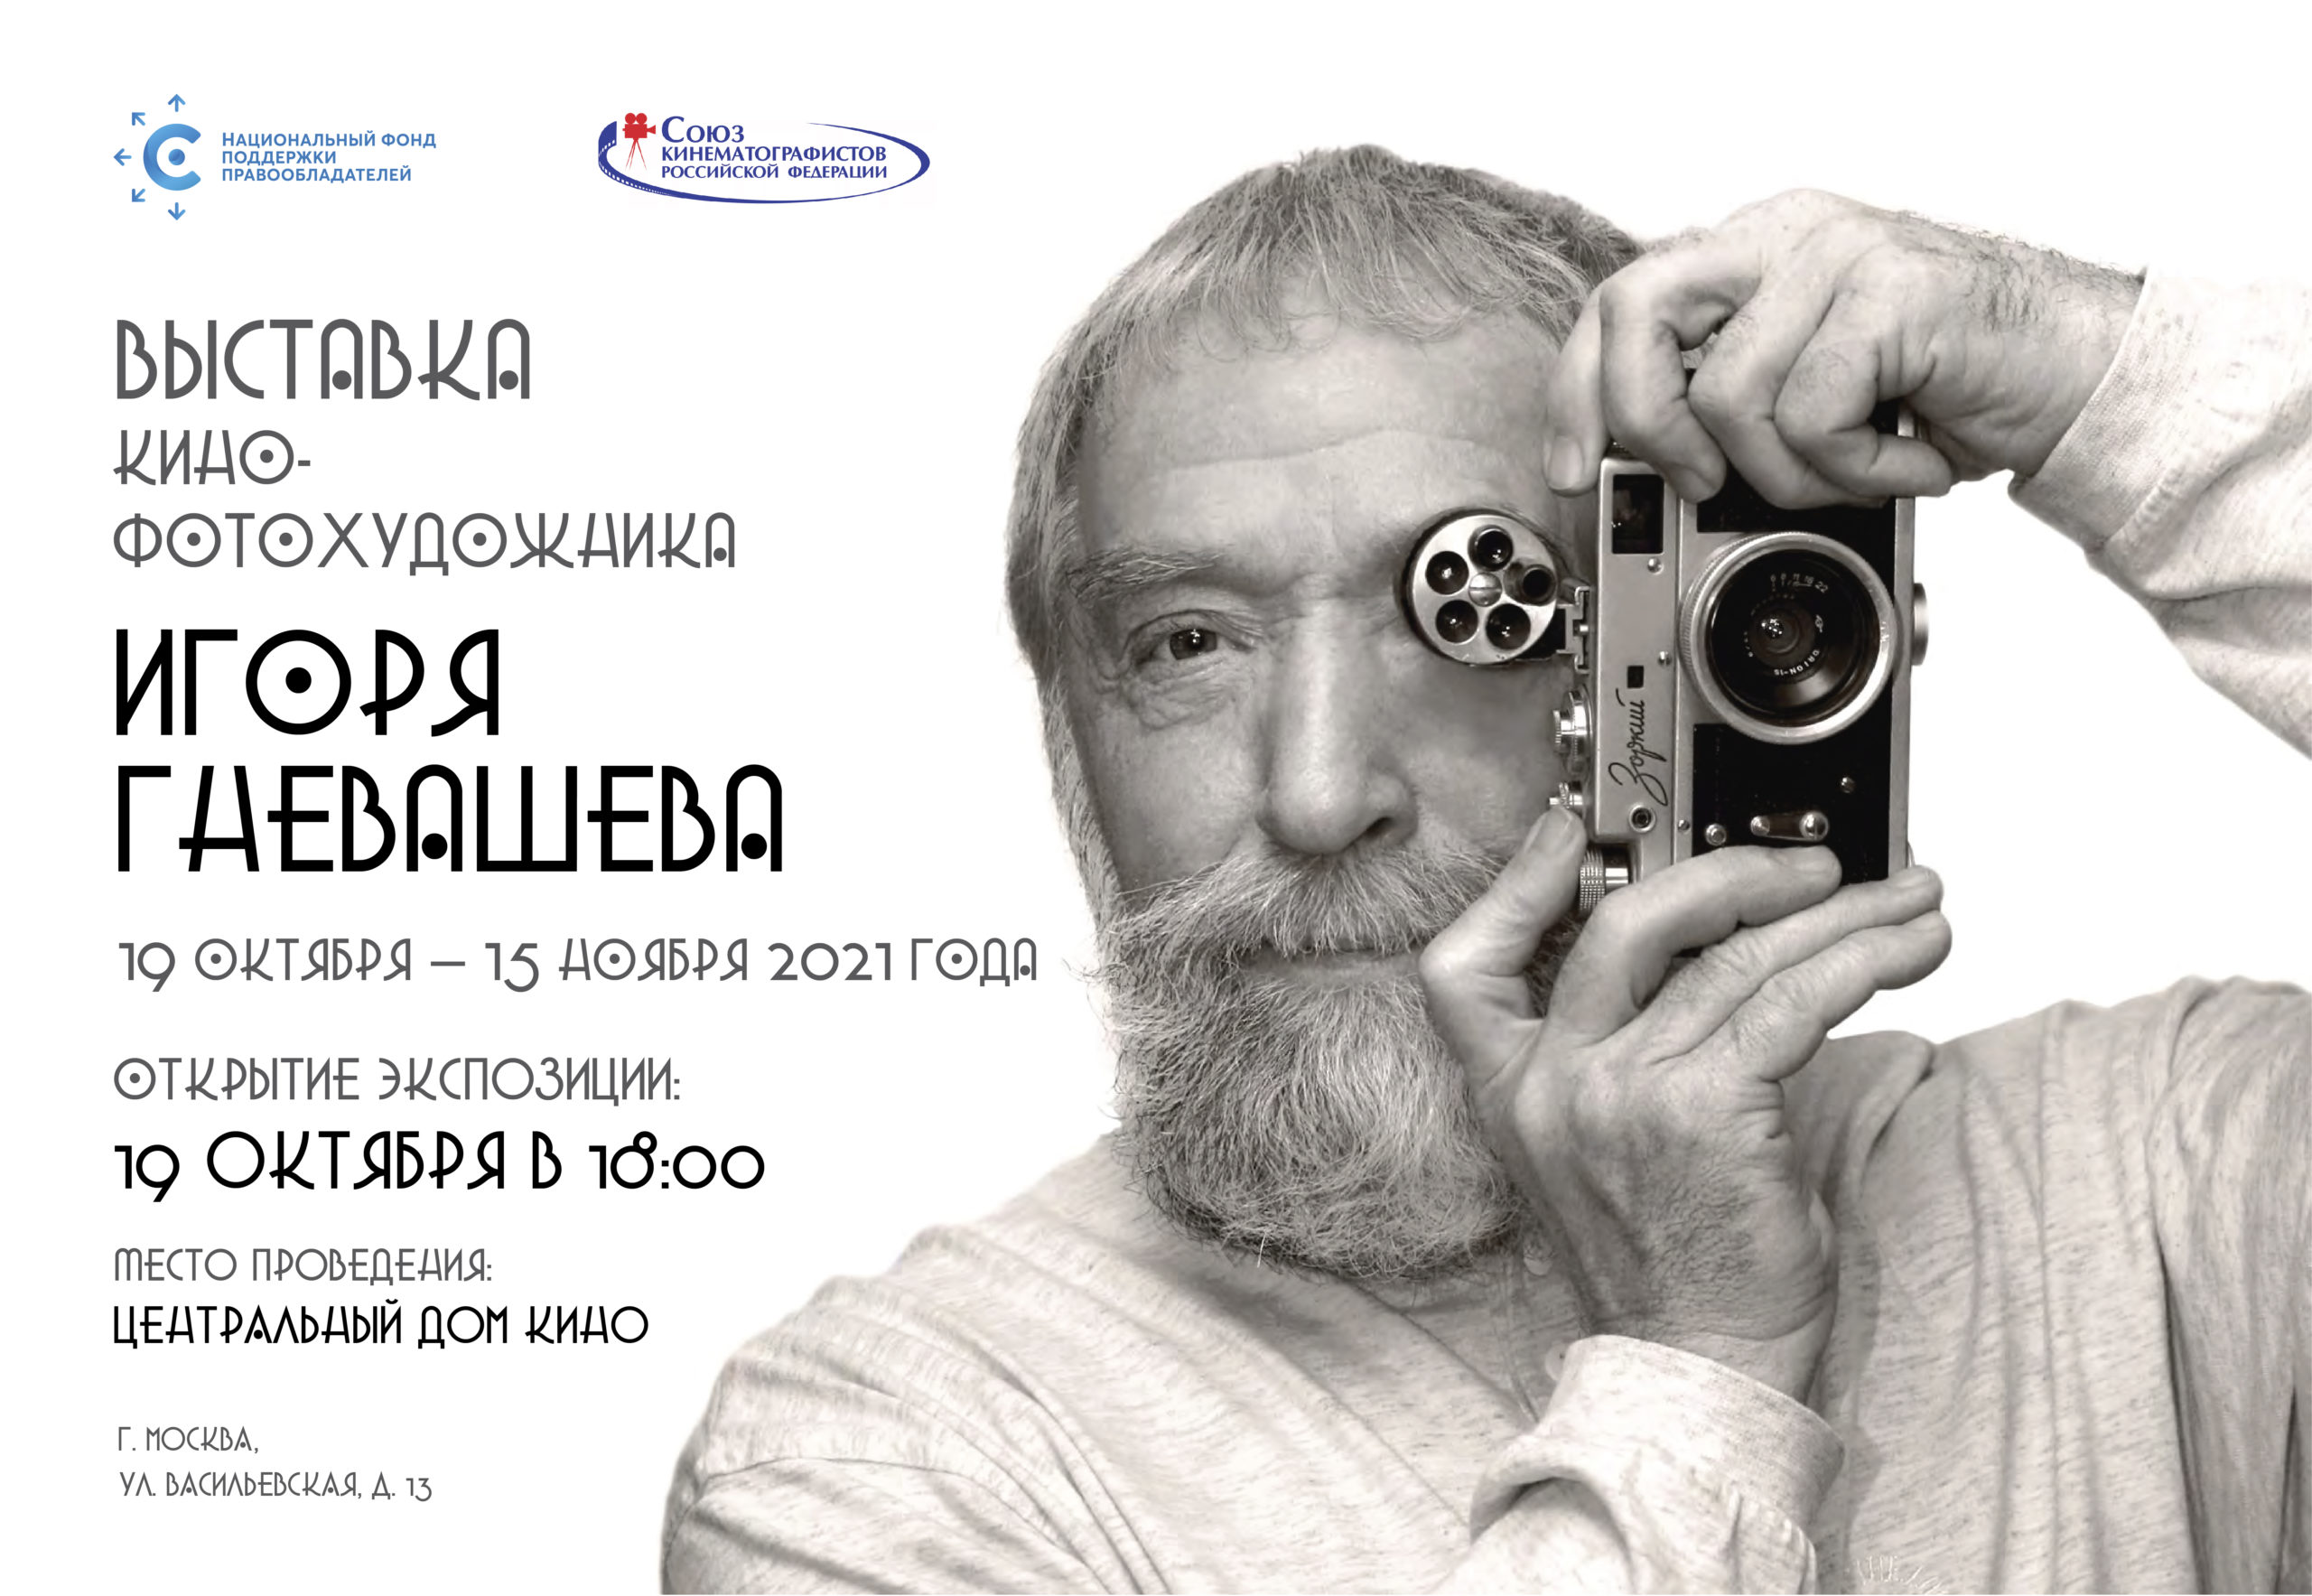 В Доме кино пройдет фотовыставка Игоря Гневашева, организованная НФПП и Союзом кинематографистов России